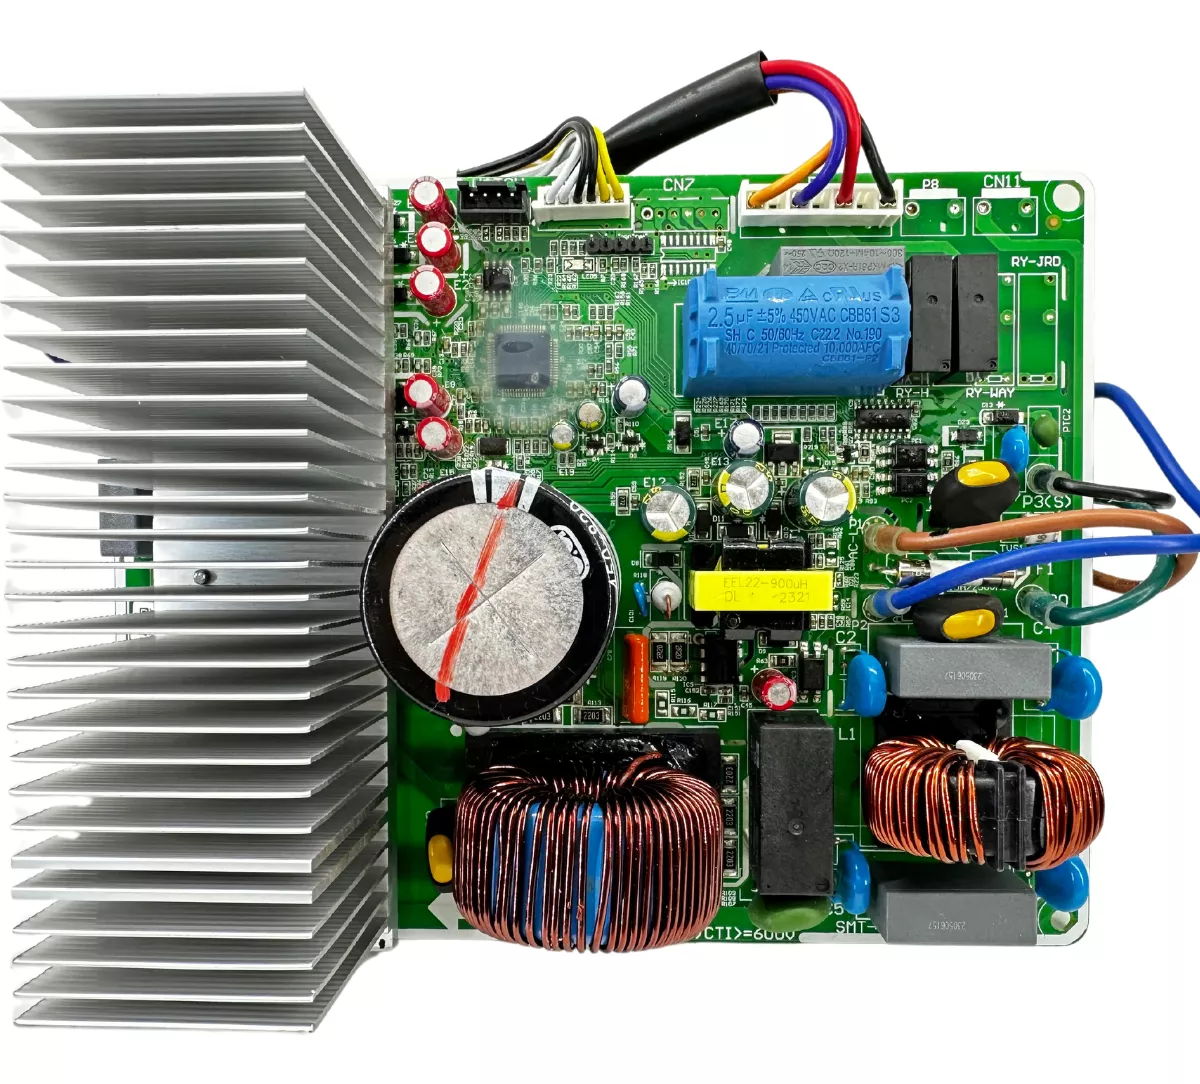 Primeira imagem para pesquisa de placa eletronica ar condicionado philco inverter